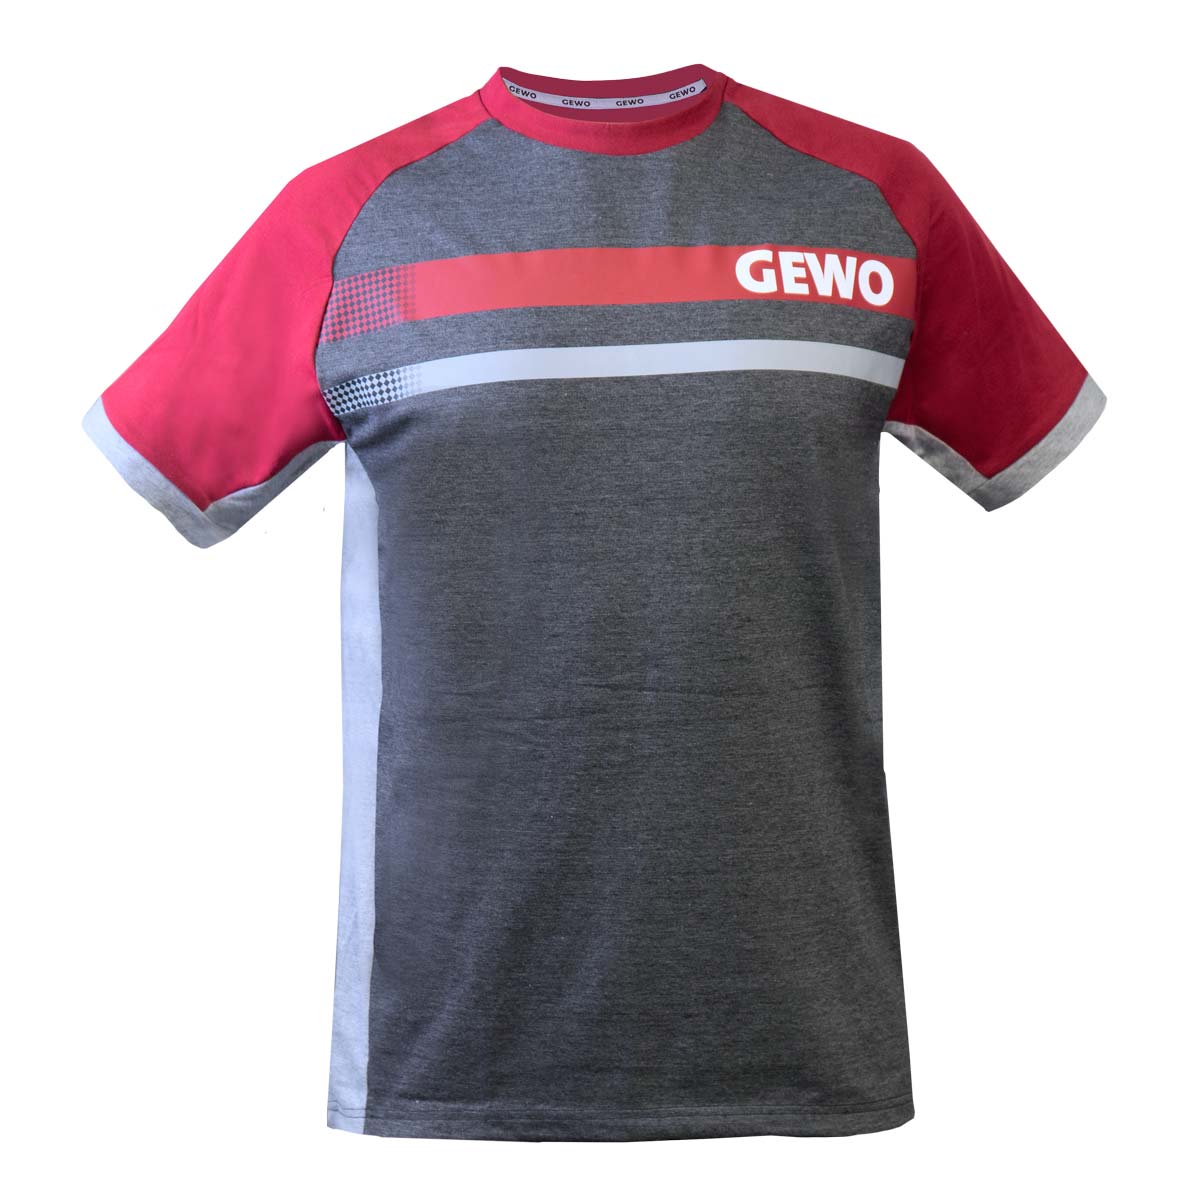 GEWO Baumwoll-Promo T-Shirt Fermo schwarz/bordeaux S